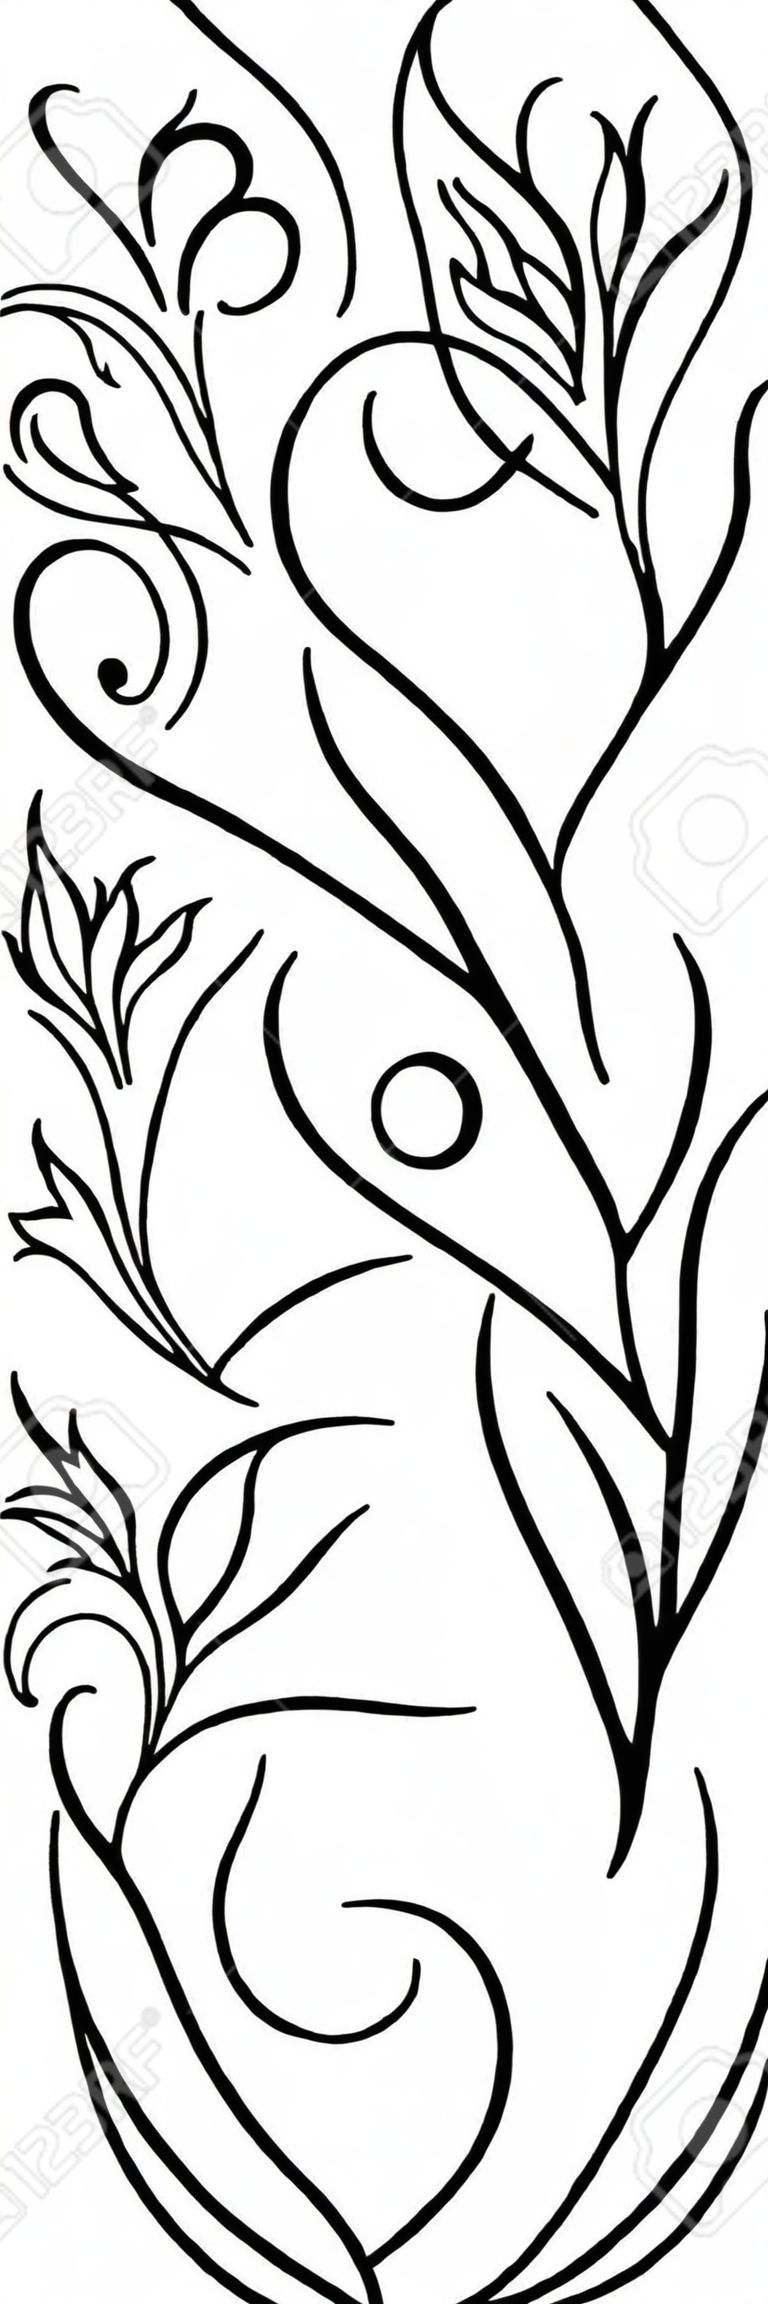 Czarno-biały wzór kwiatowy. Ozdoba filigranowa. Stylizowany szablon tapety, tekstylne, szal, dywan.